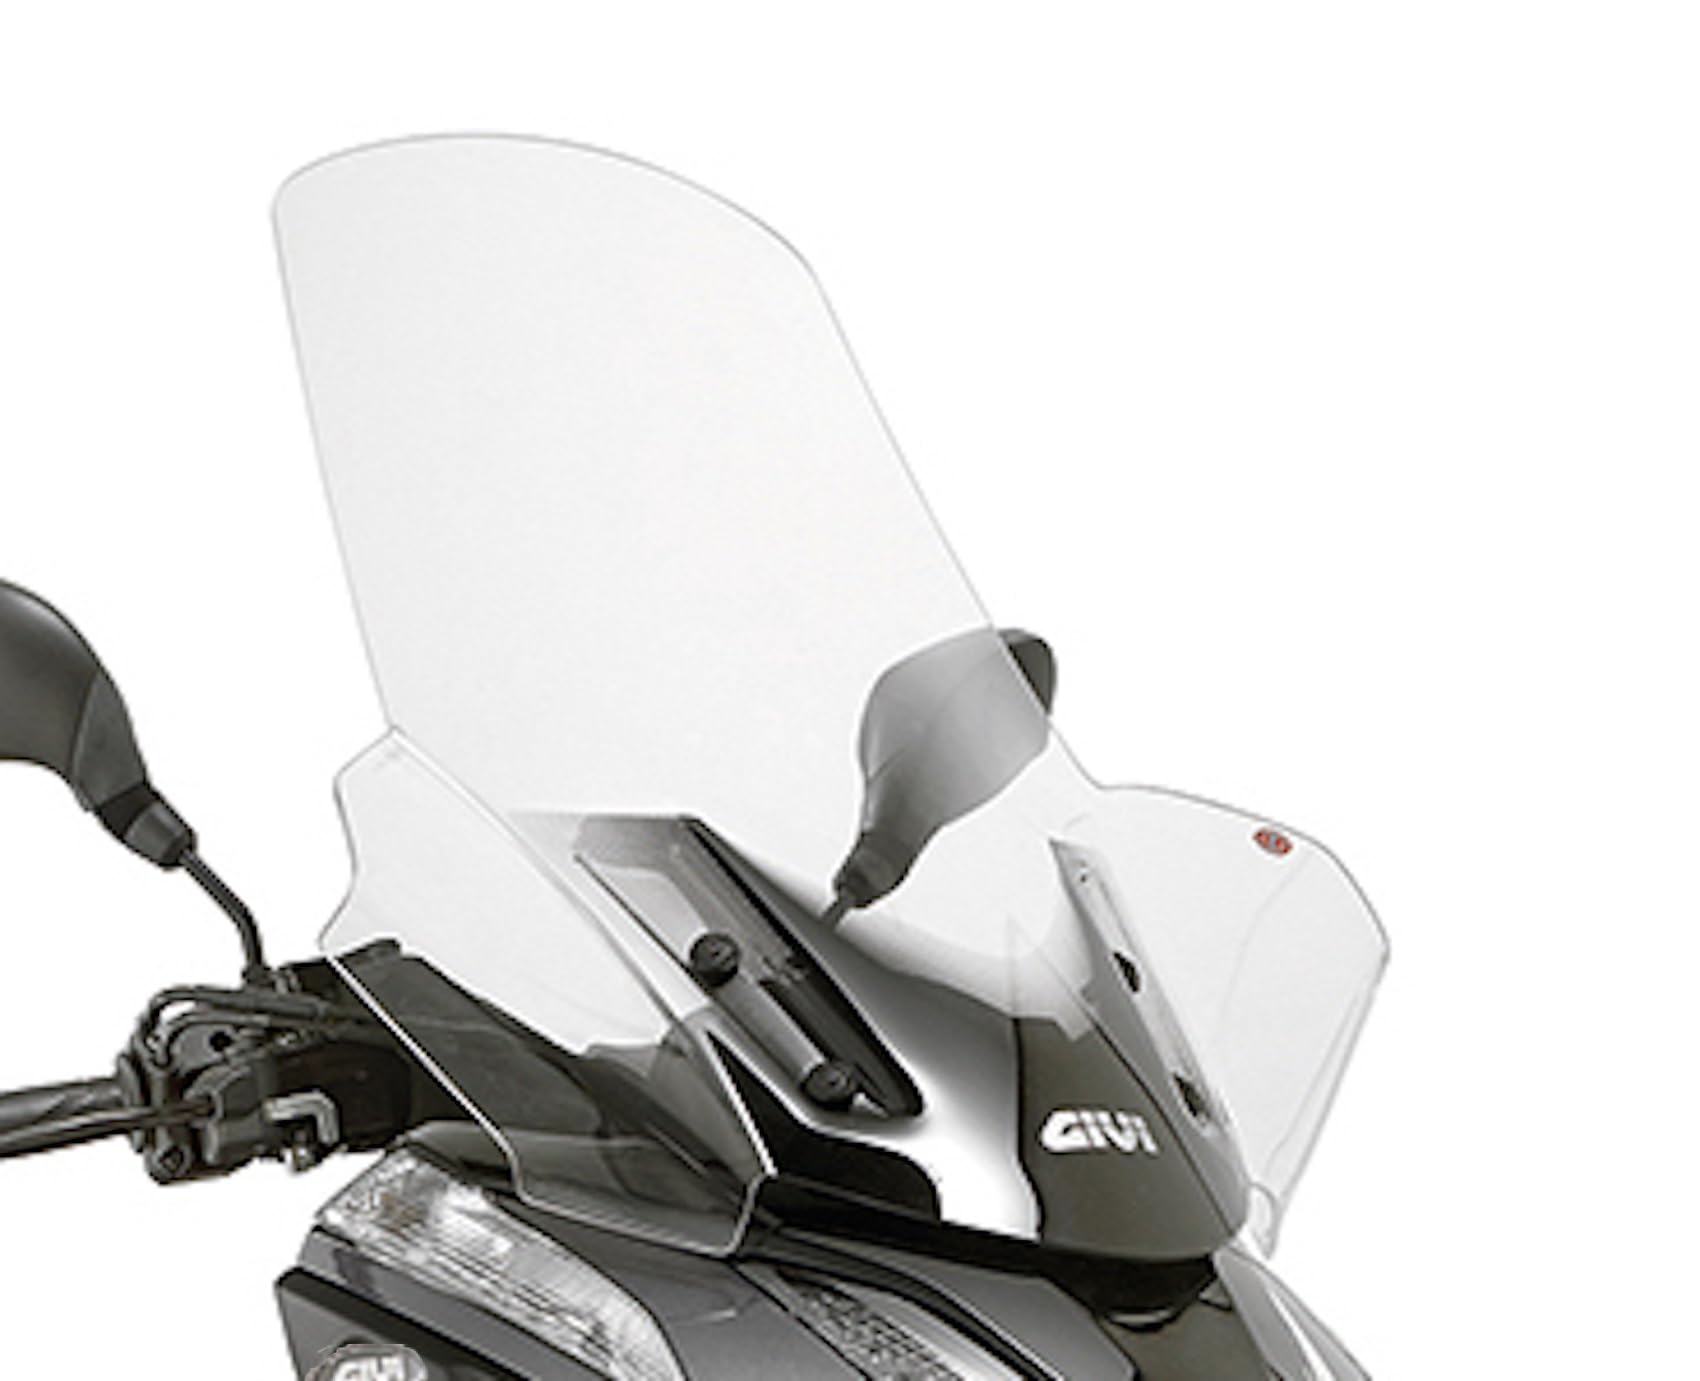 givi 2120dt windschild kompatibel mit yamaha tricity 125-155 2014 2015 2016 2017 2018 2019 2020 2021 2022 mototopgun von MOTOTOPGUN